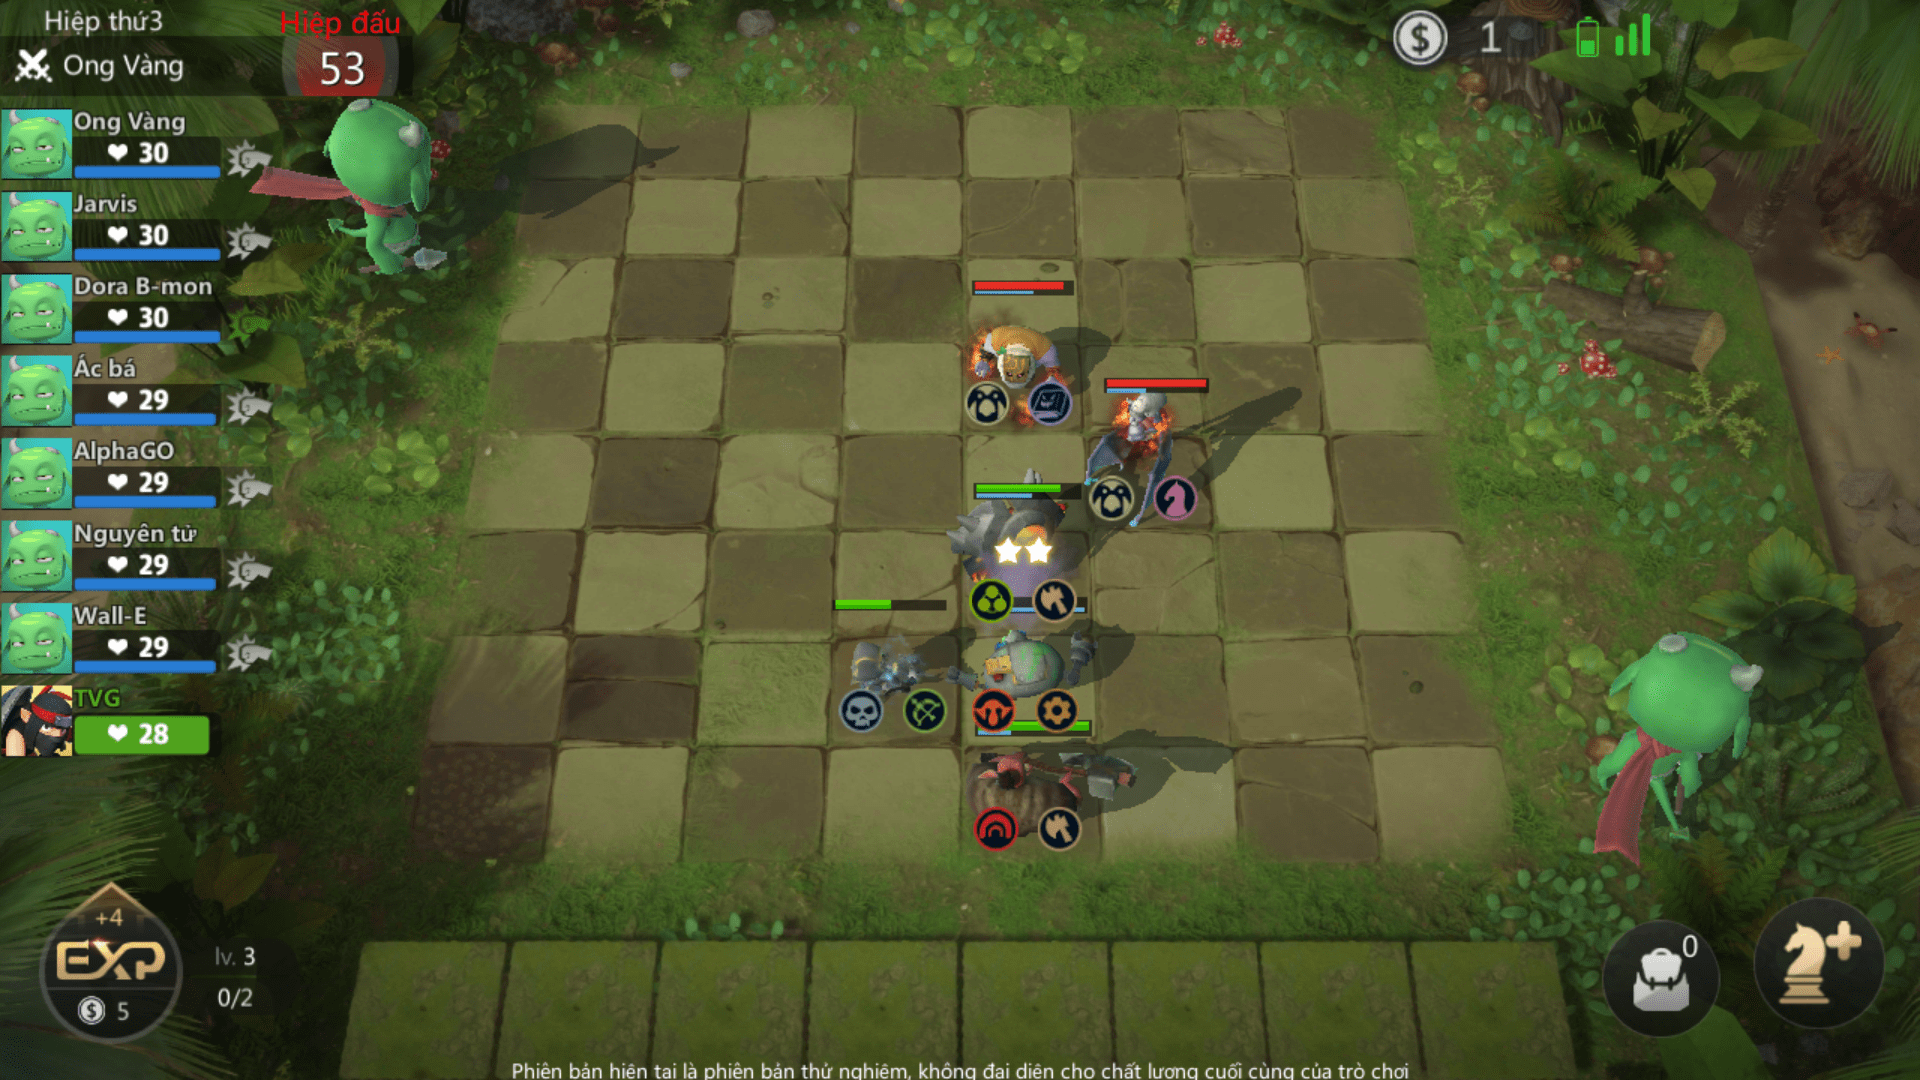 Hướng dẫn tải và trải
nghiệm sớm tựa game Auto Chess Mobile đang hot trên Android